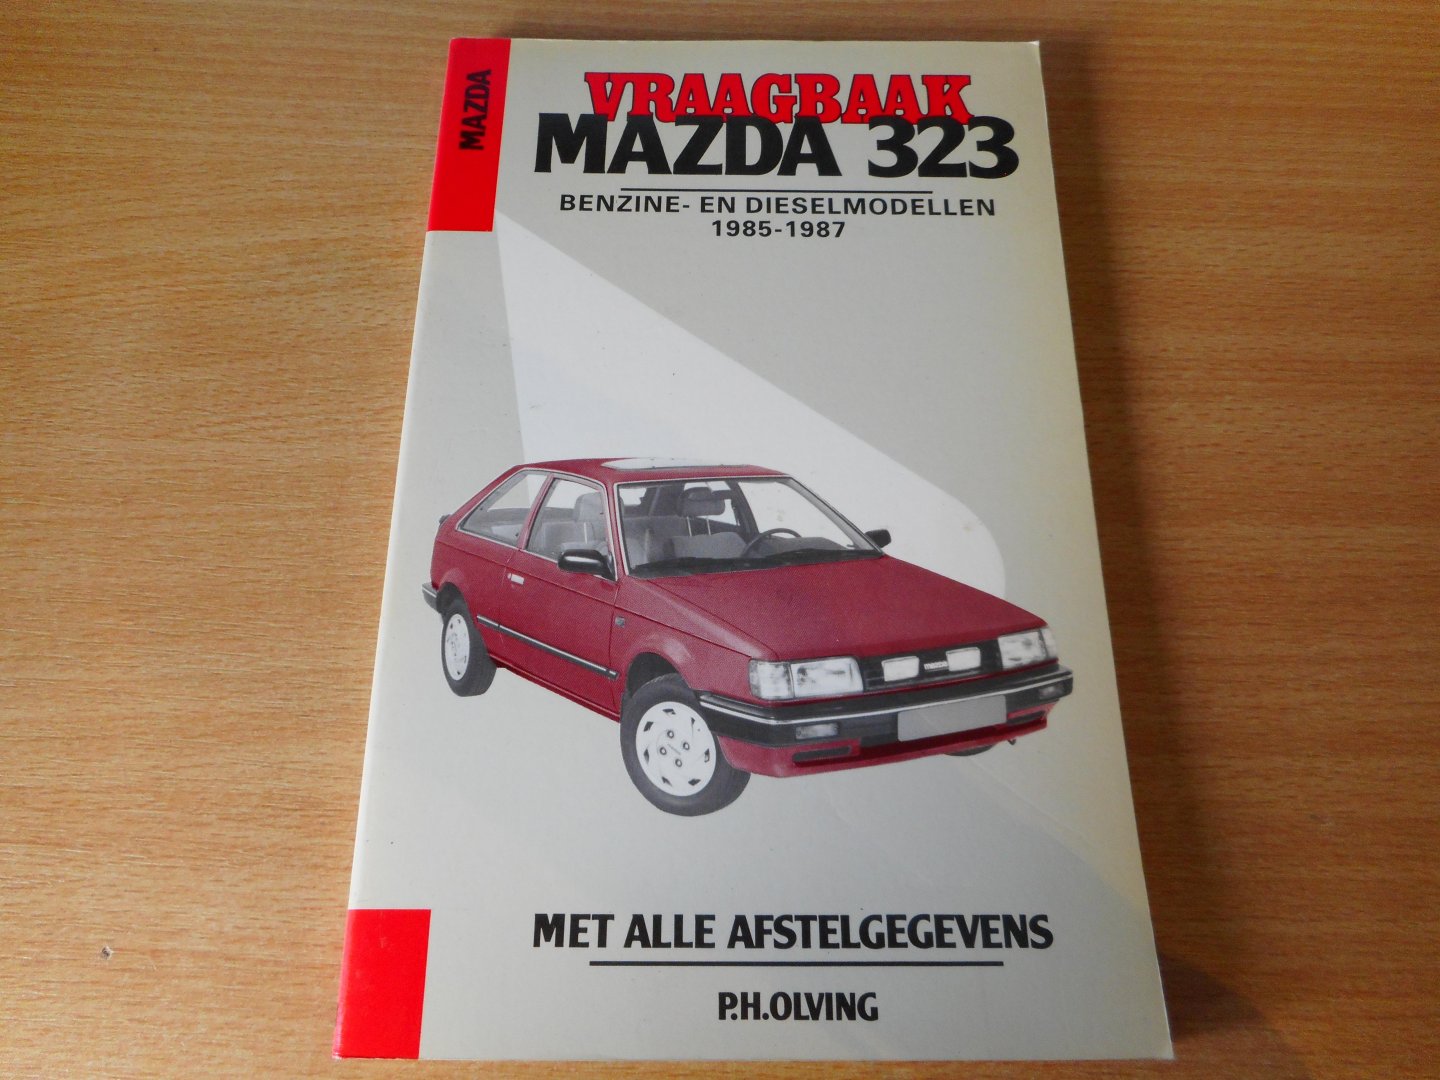 Olving, P.H. (red.) - Vraagbaak Mazda 323 benzine- en dieselmodellen 1985-1987